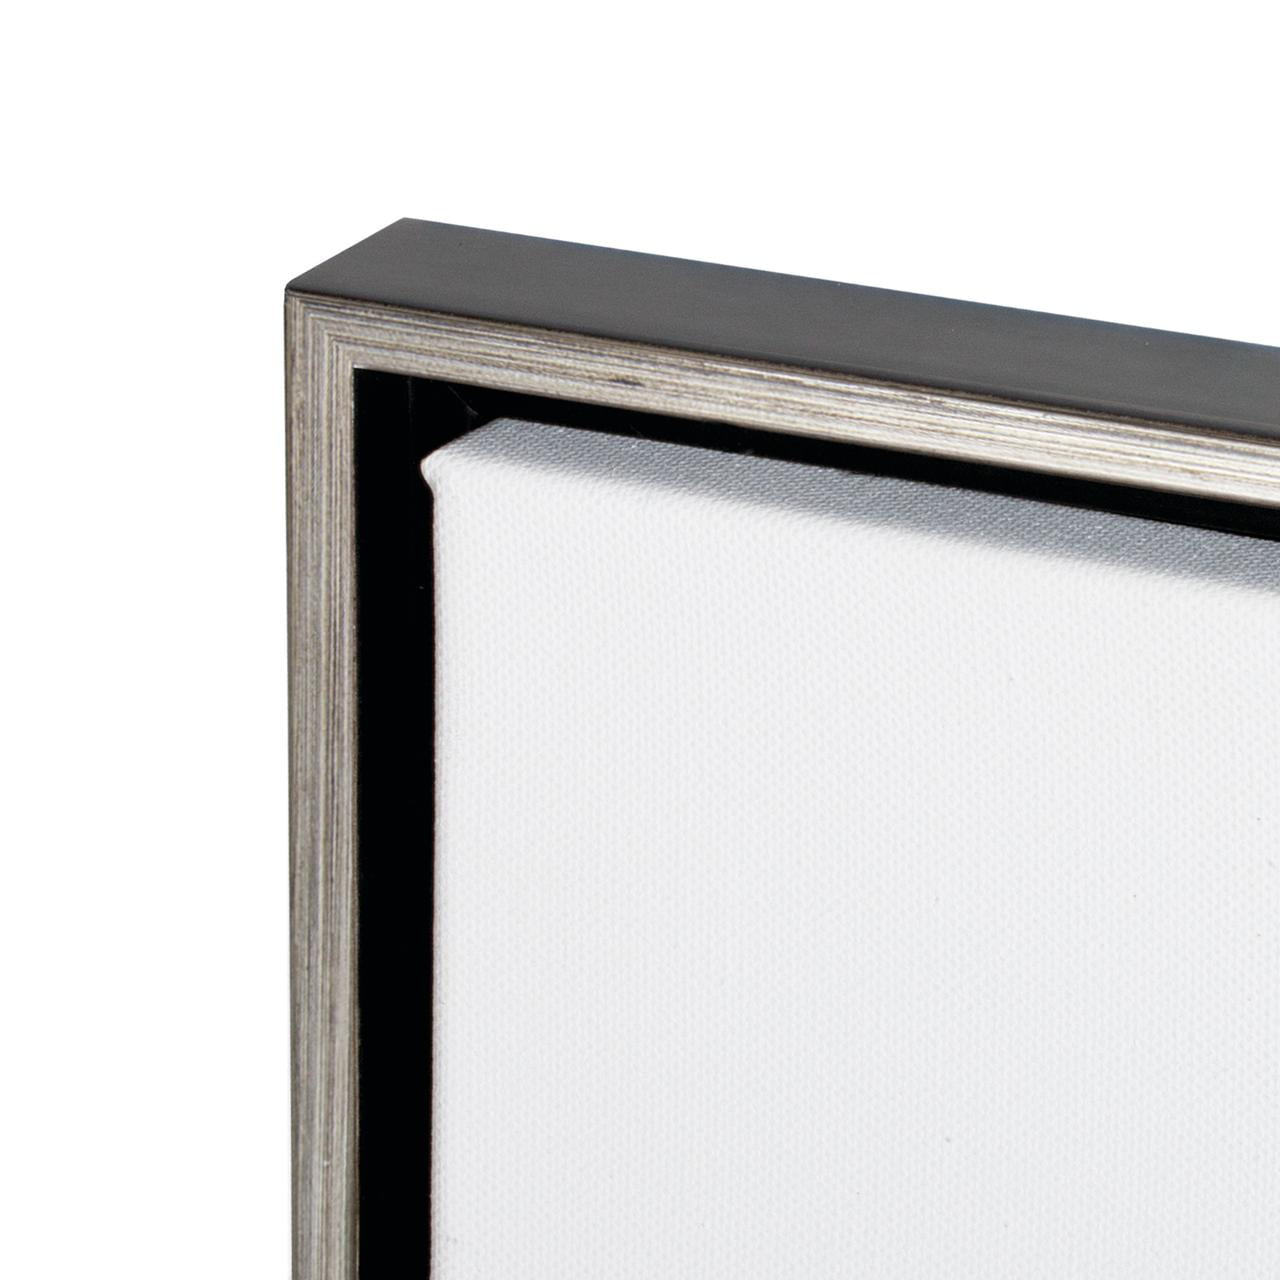 Best Deal for Emuledo Metal frame floater frame for 12X12 Stretched